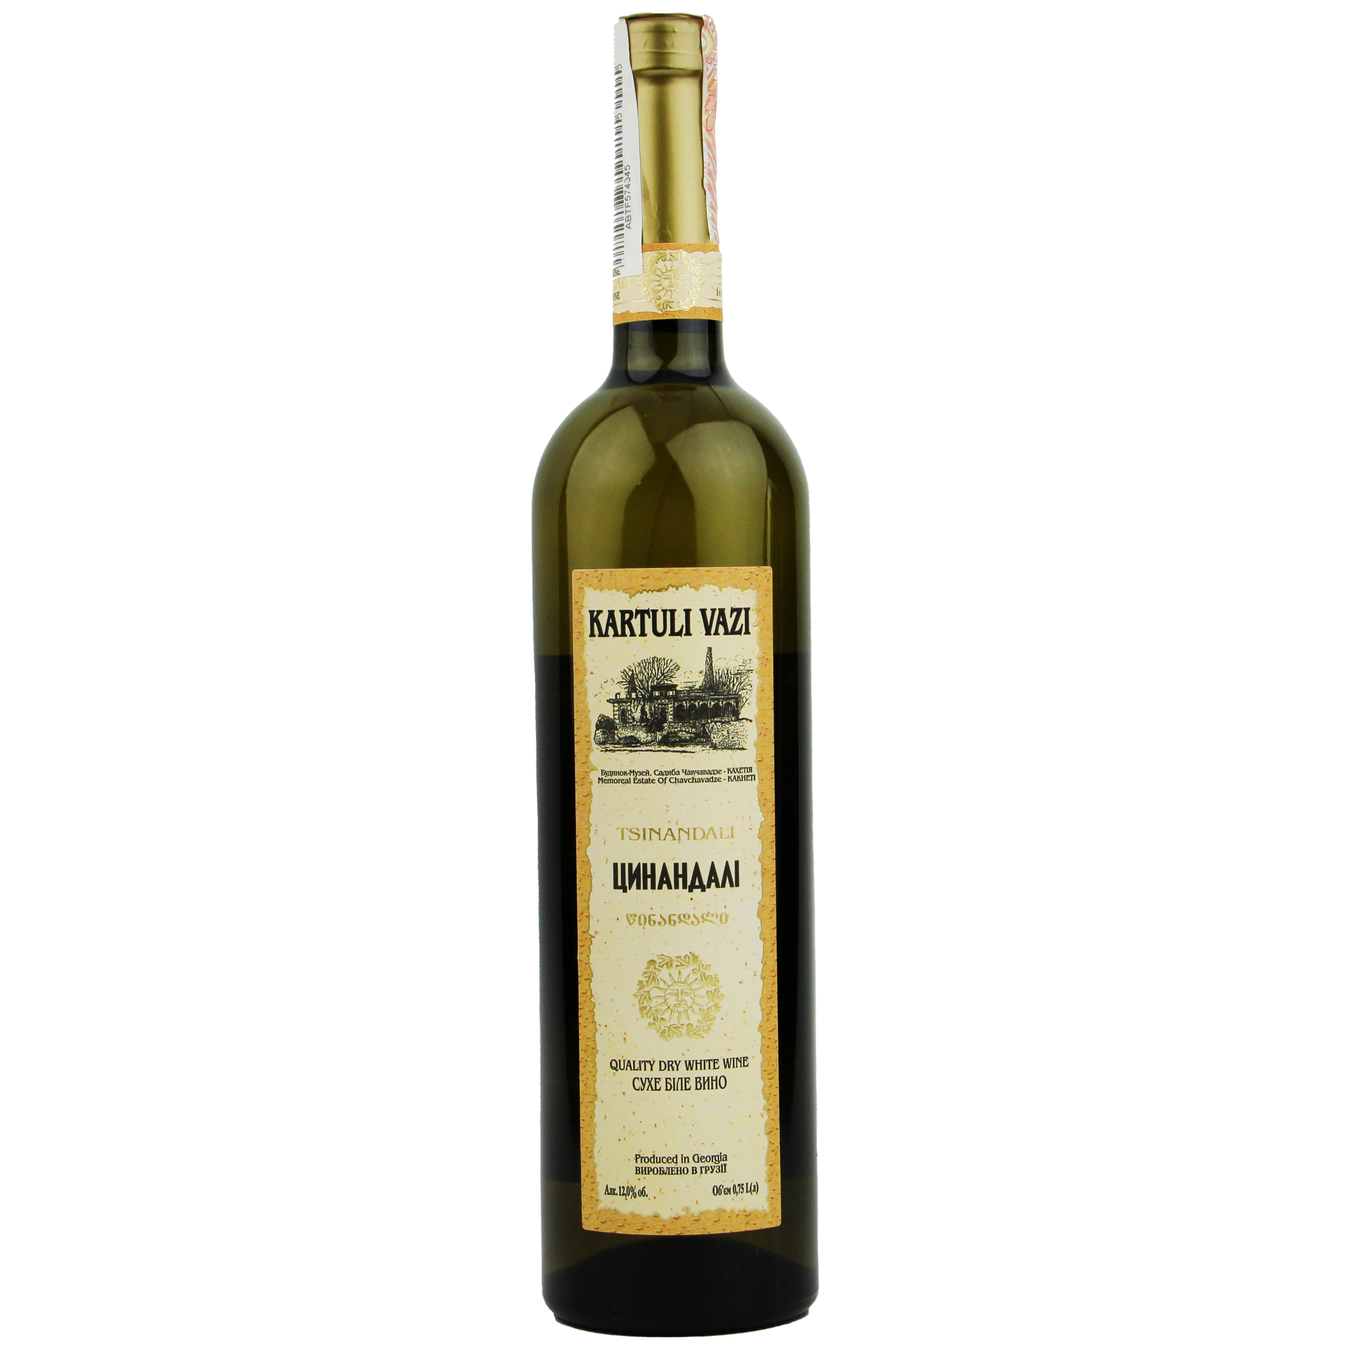 Kartuli Vazi Tsinandali Wine white dry 12% 0,75l